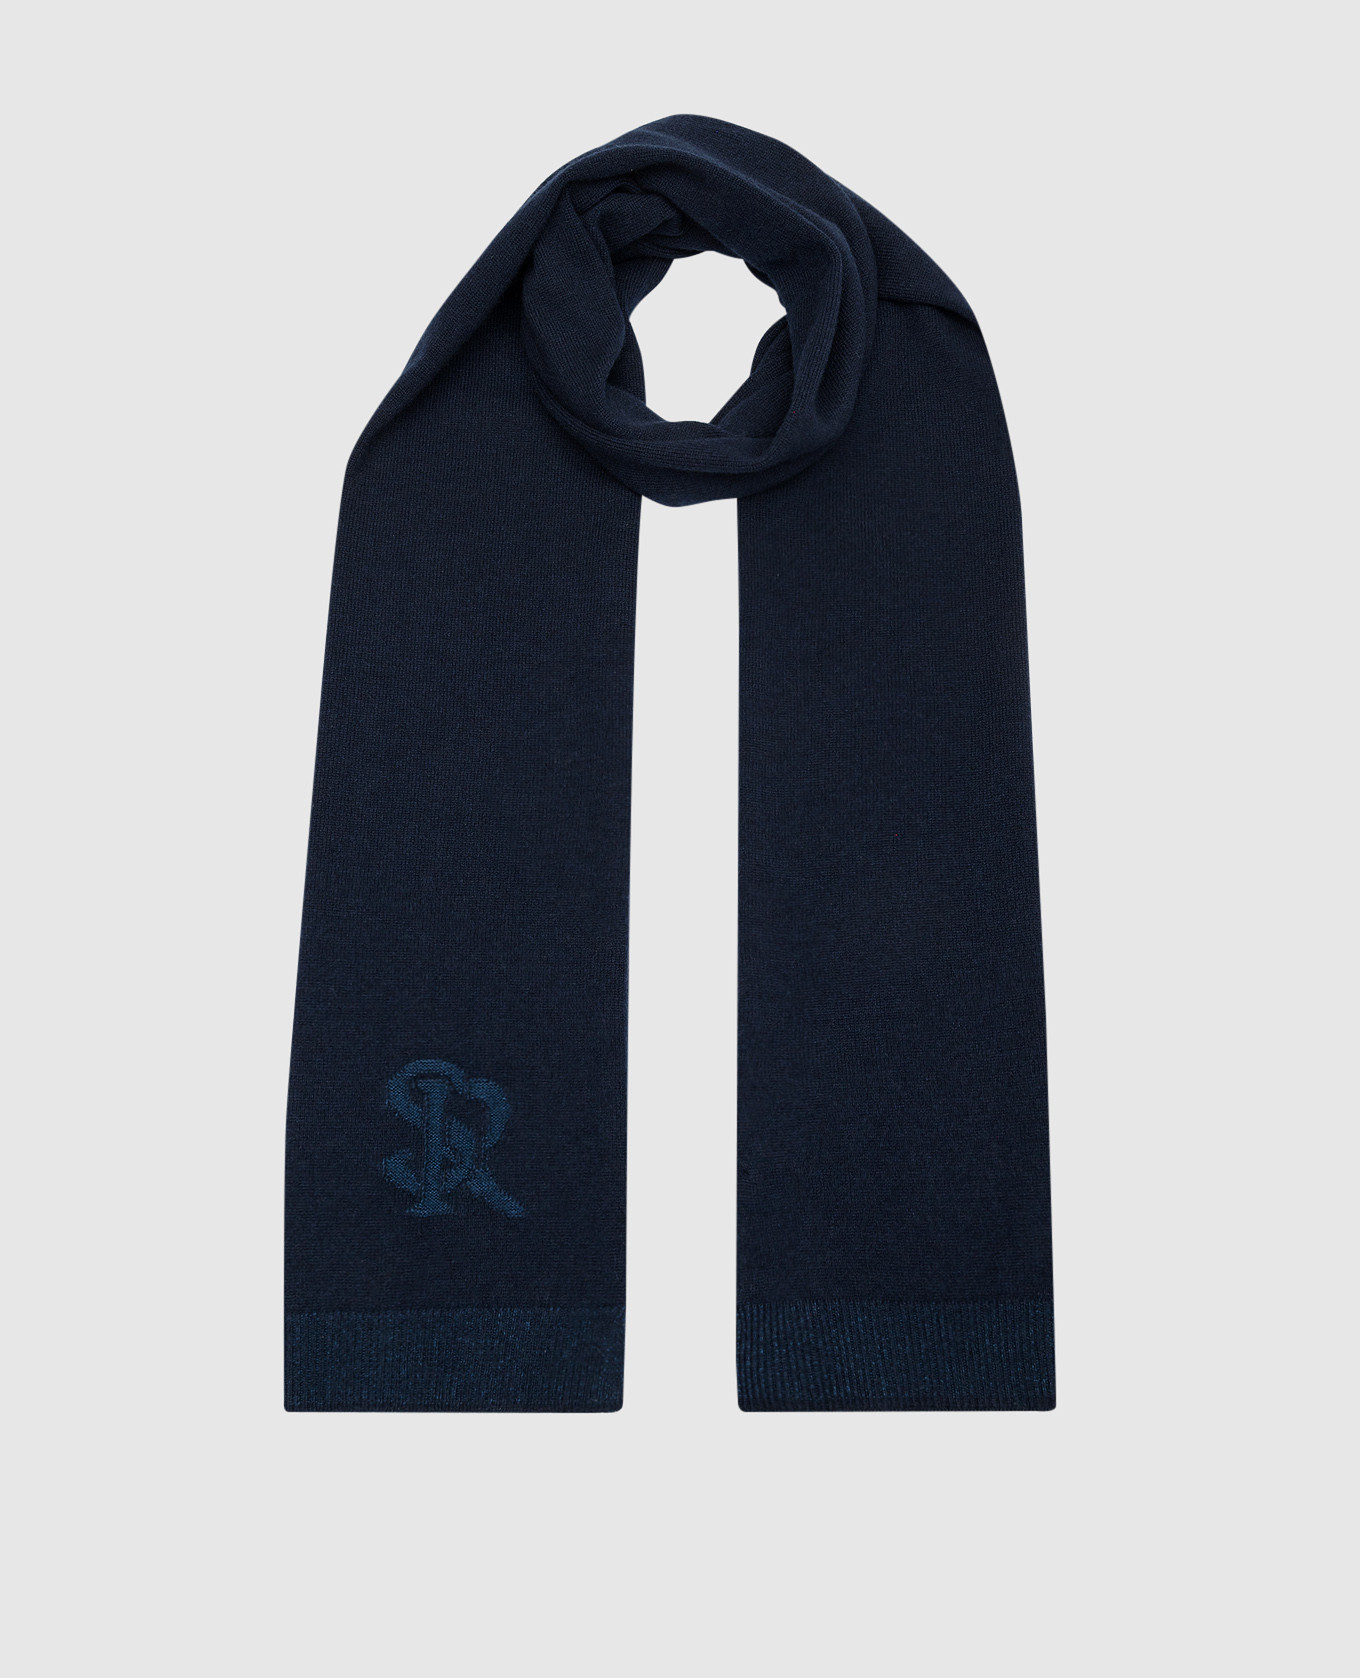 Синий шарф с кашемиром и шелком с узором логотипа.